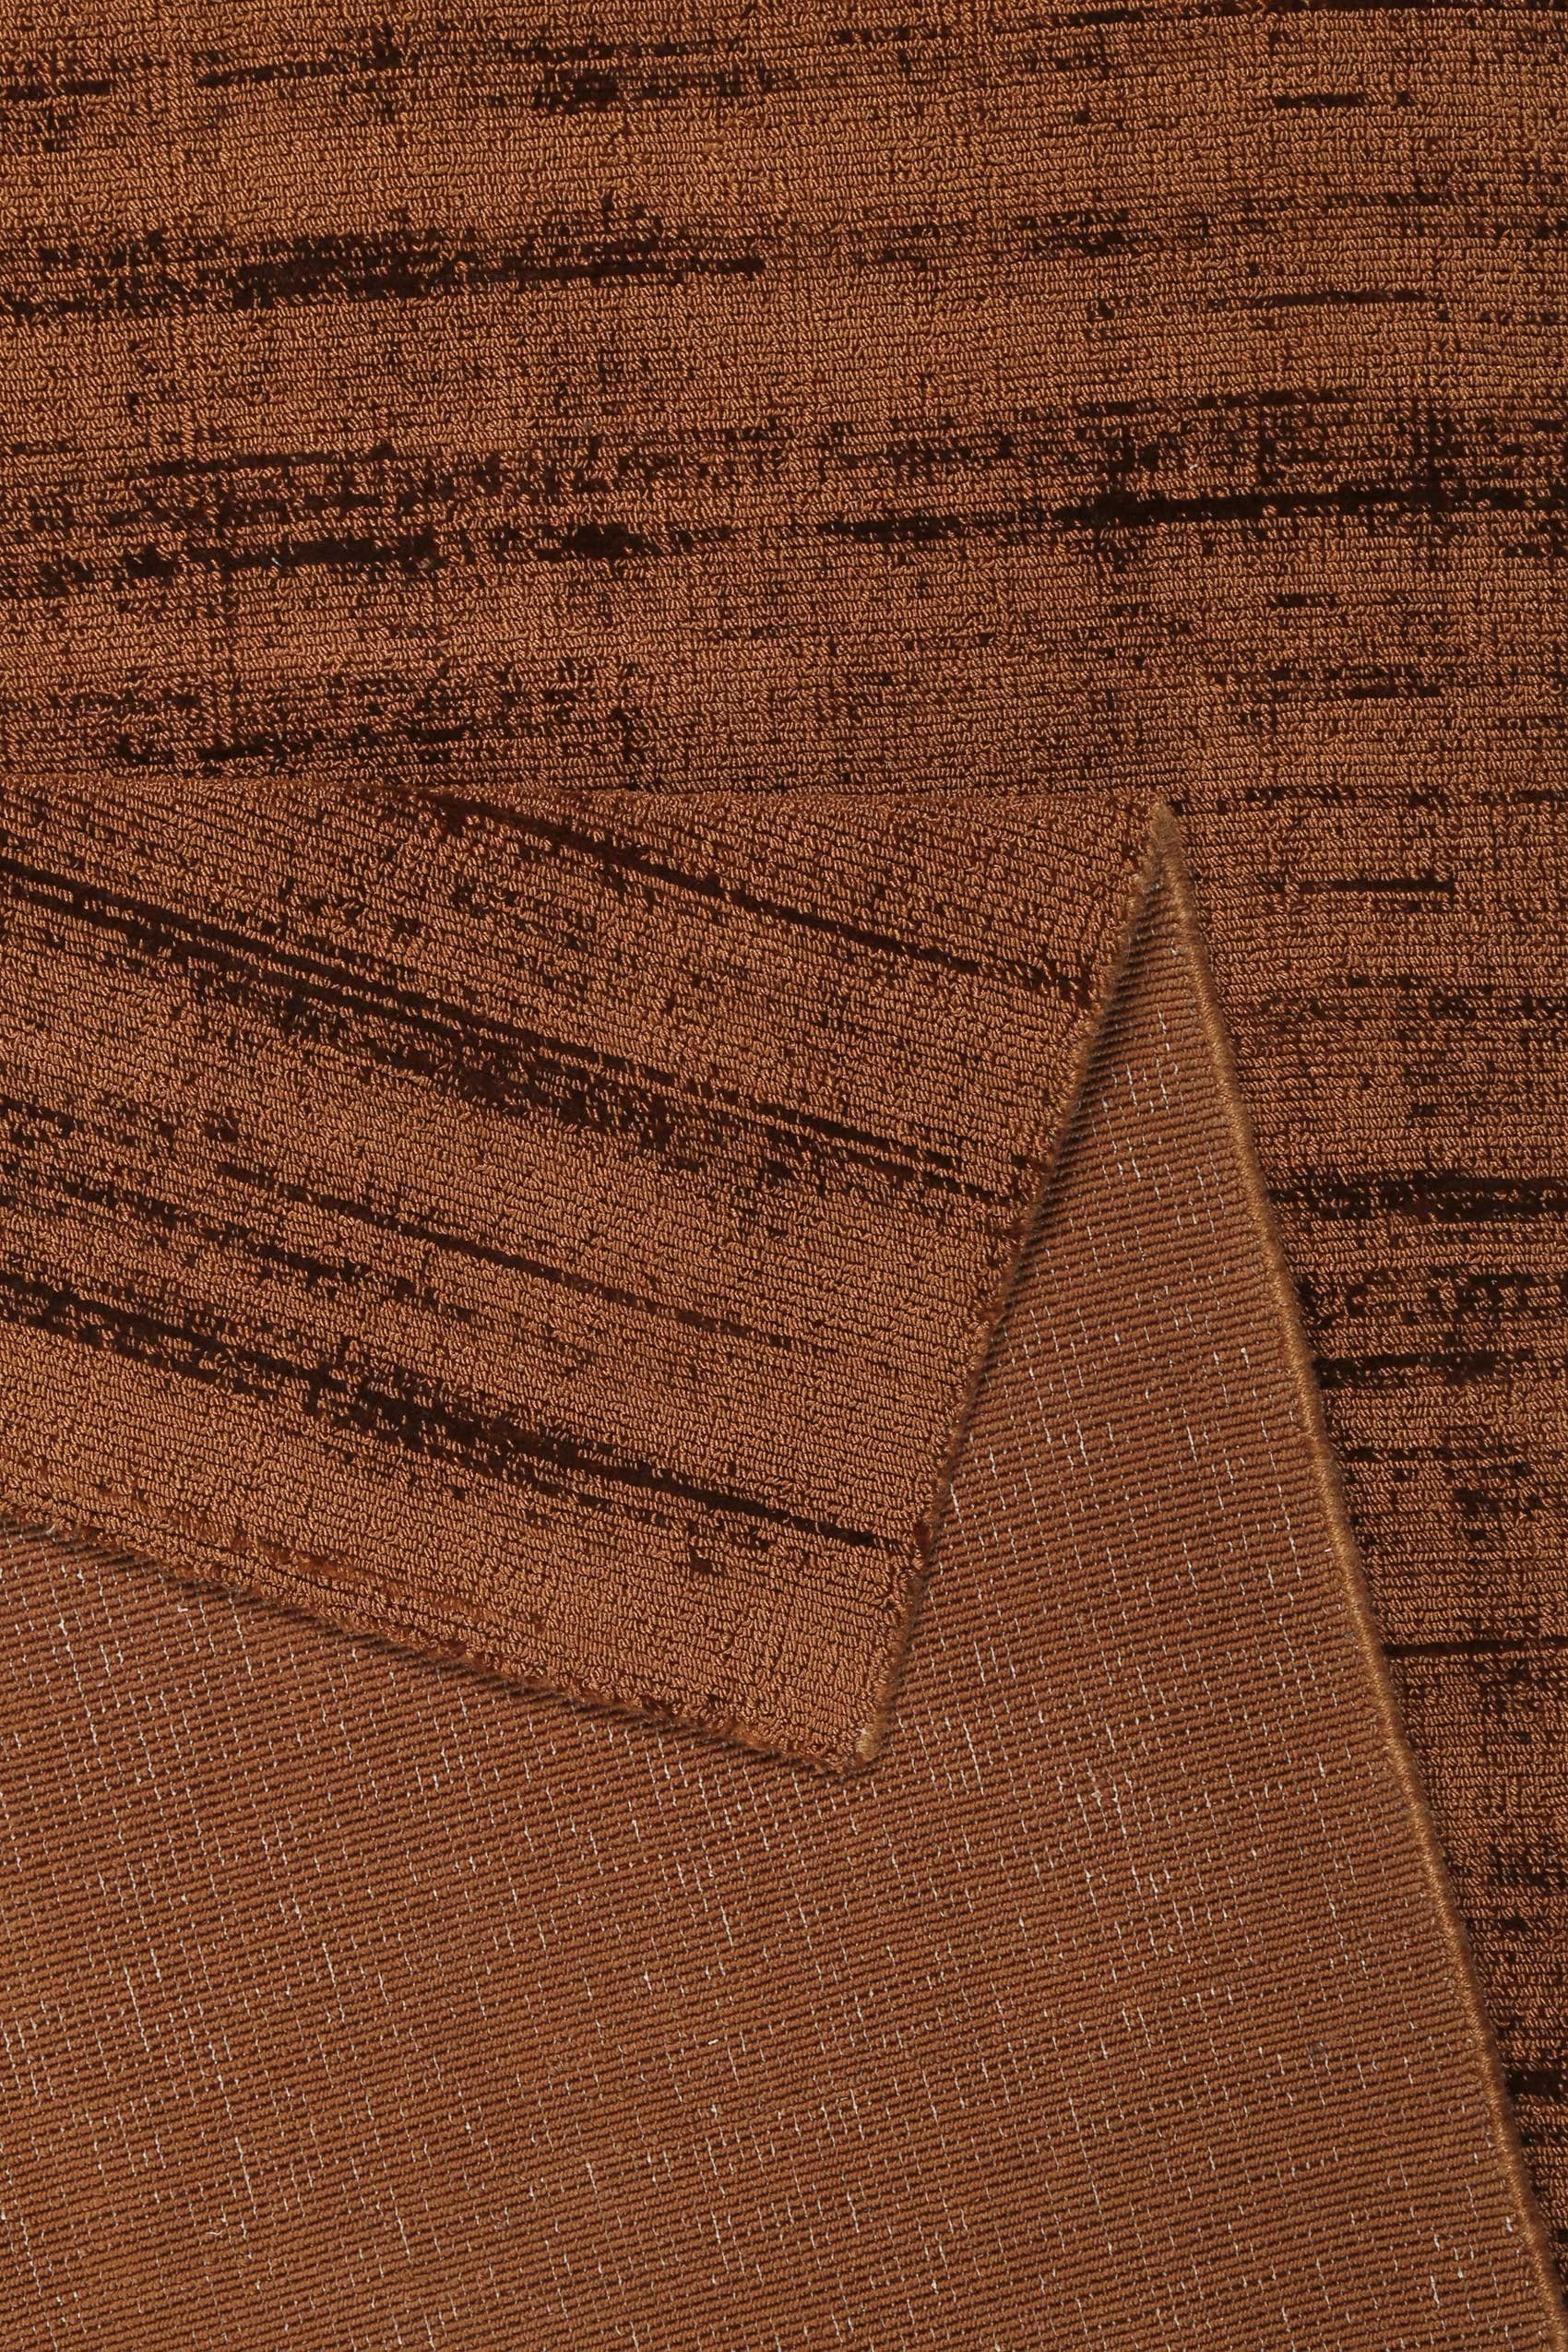 Teppich Gil, Esprit, rechteckig, Höhe: mm, braun terracotta glänzend, 8 seidig handgewebt, Farbbrillianz, Melangeeffekt schimmernde